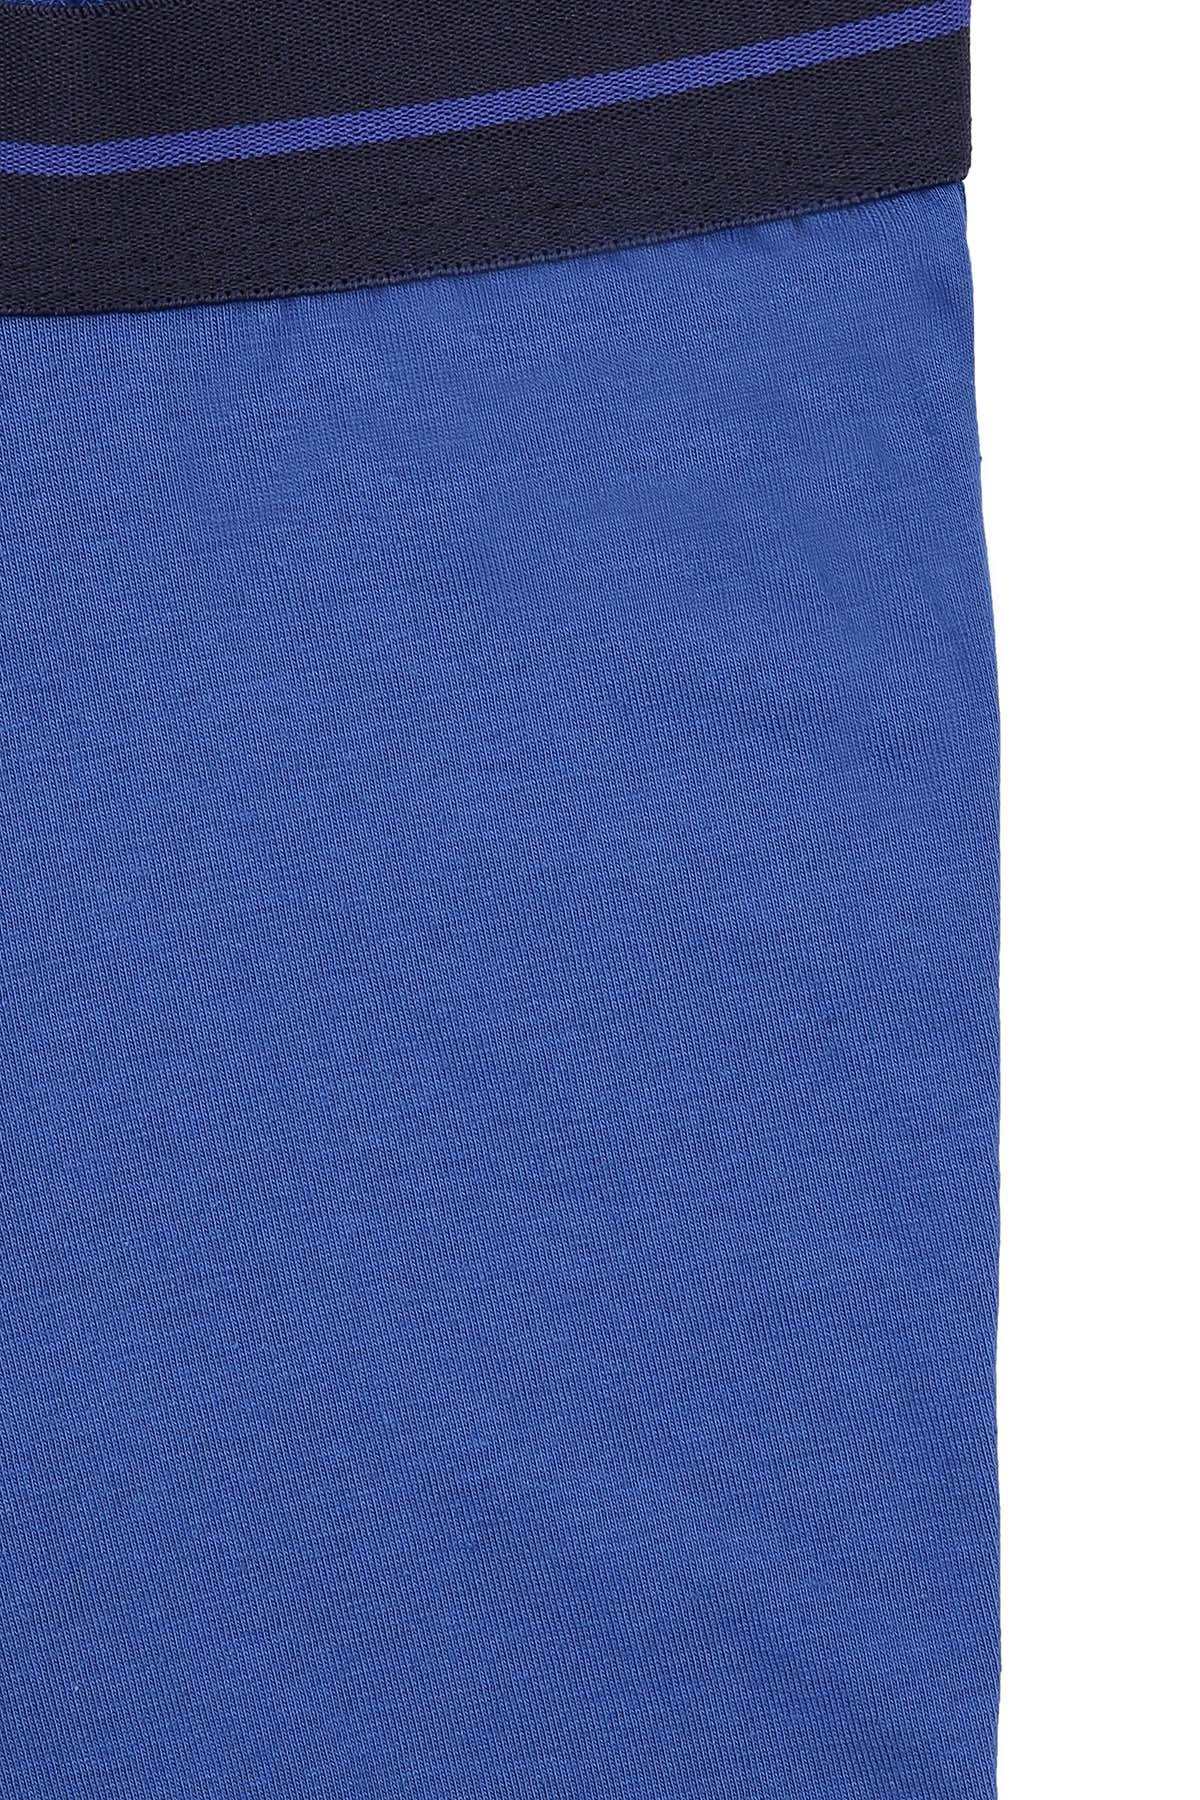 BOXER SHORT PLAIN ROYAL BLUE at Charcoal Clothing